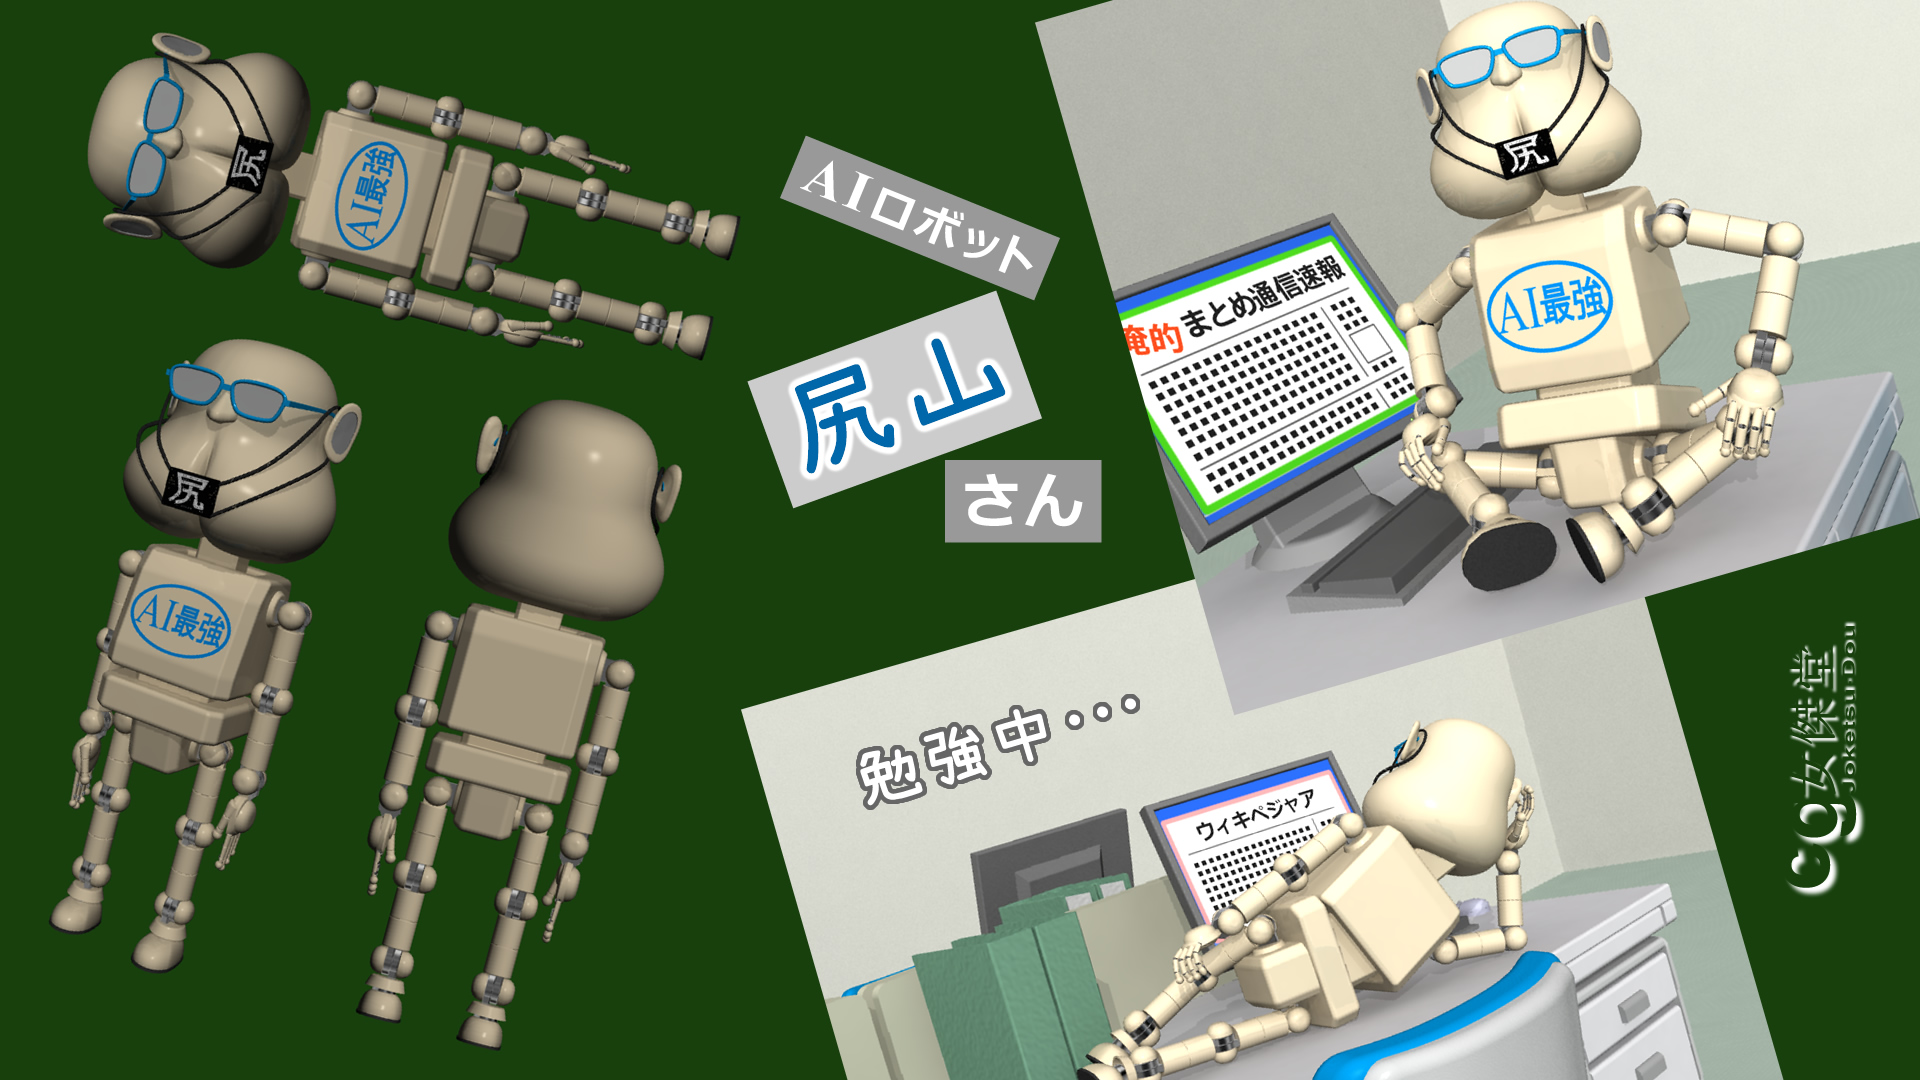 AIロボット尻山さん（3Dキャラクター）